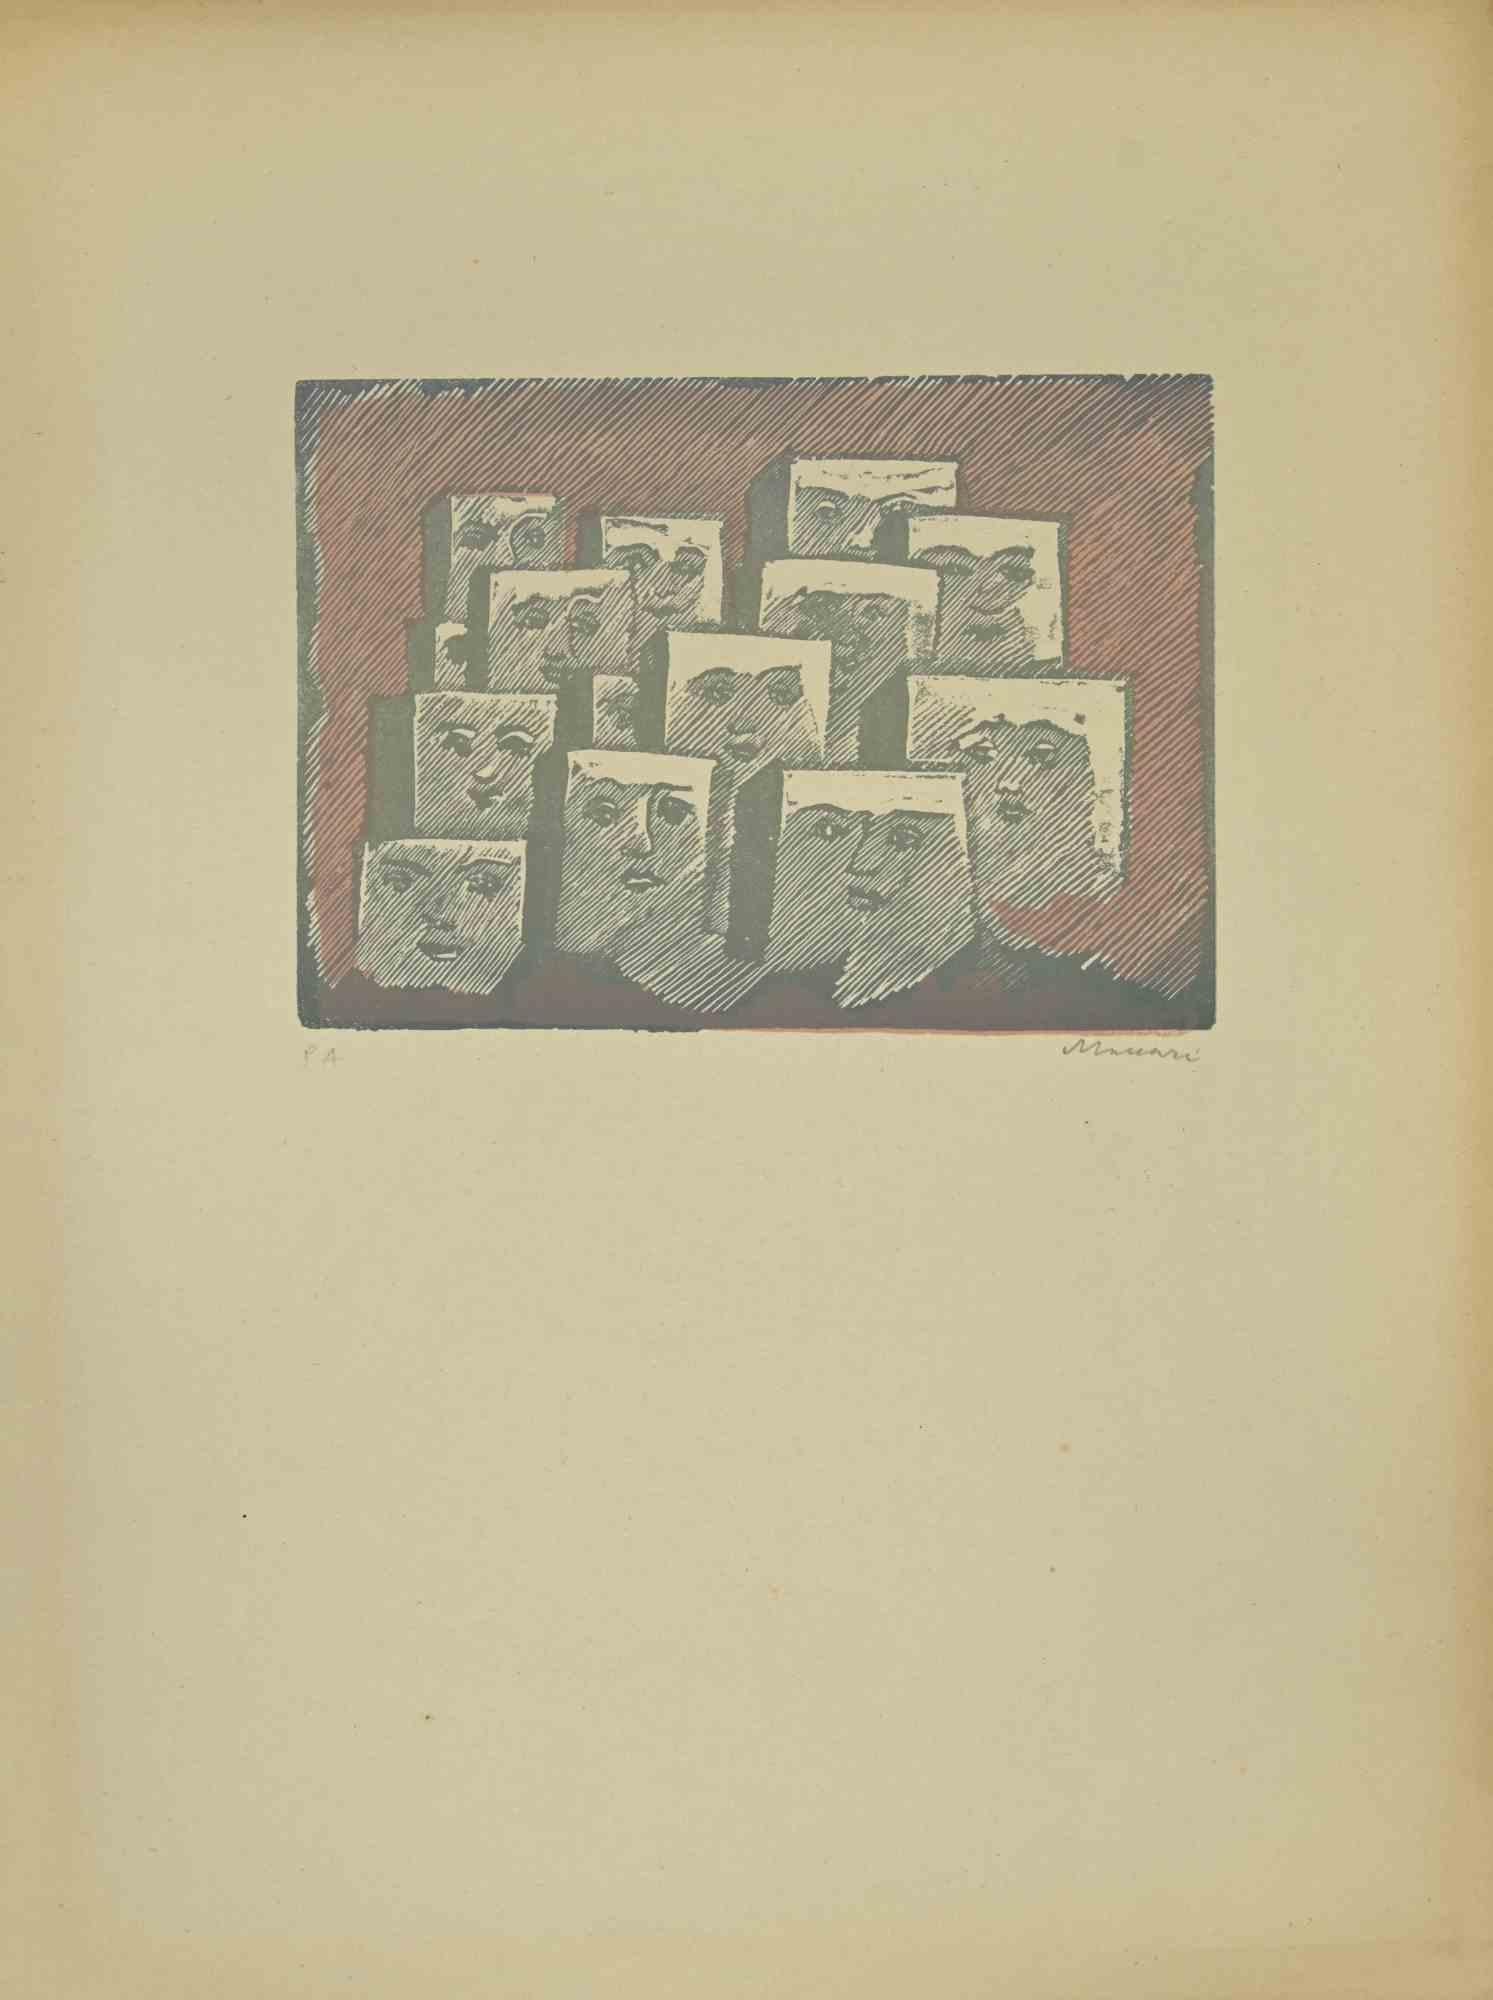 Faces ist ein Linolschnitt realisiert  von Mino Maccari in den 1940er Jahren.

50 x 30 cm.

Handsigniert im unteren rechten Teil. Auflage von 12 Exemplaren.

Referenz; Kat. Meloni , pag 367, n.1741.

Gute Bedingungen.

Mino Maccari (Siena, 1924-Rom,